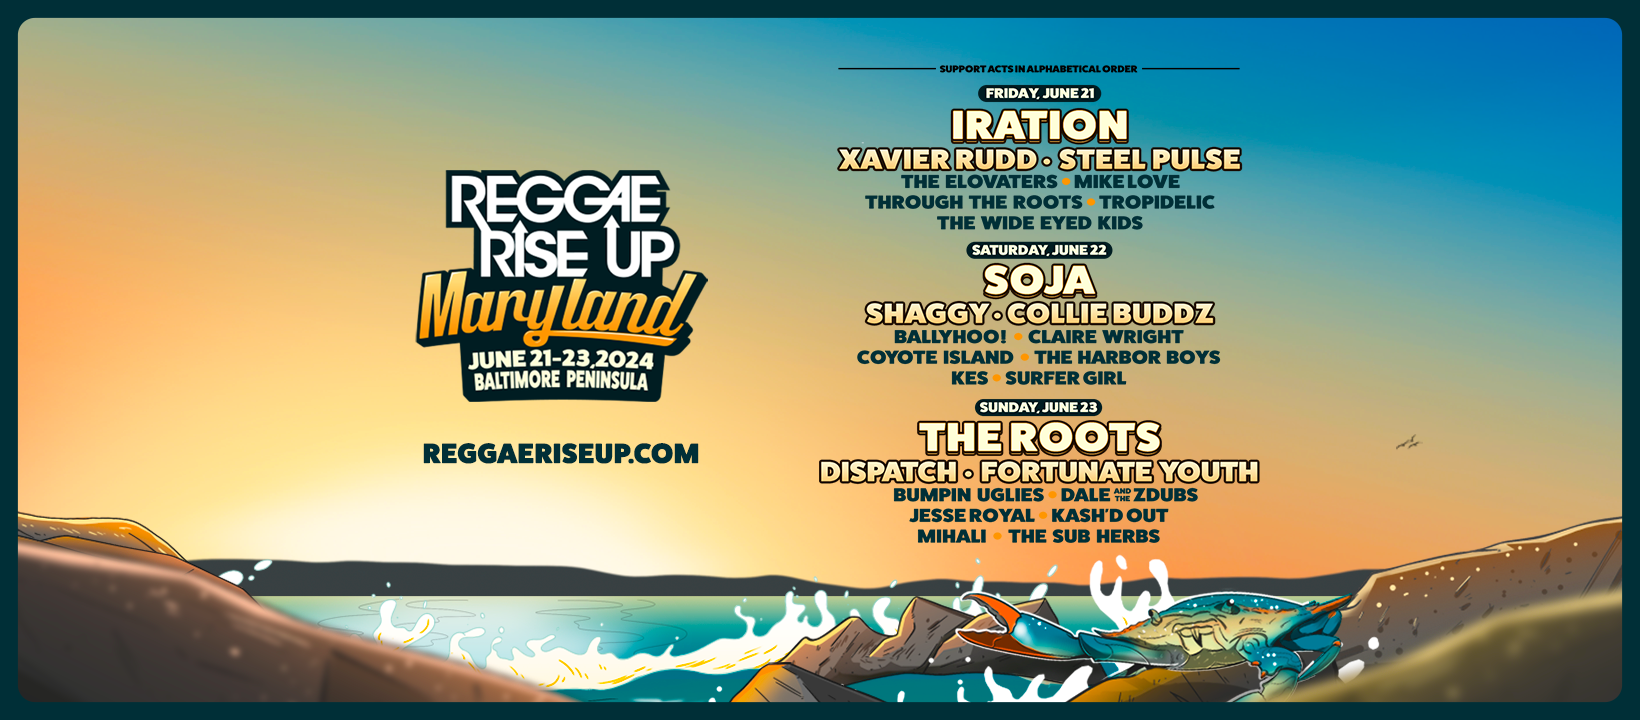 Reggae Rise Up - Maryland 2024